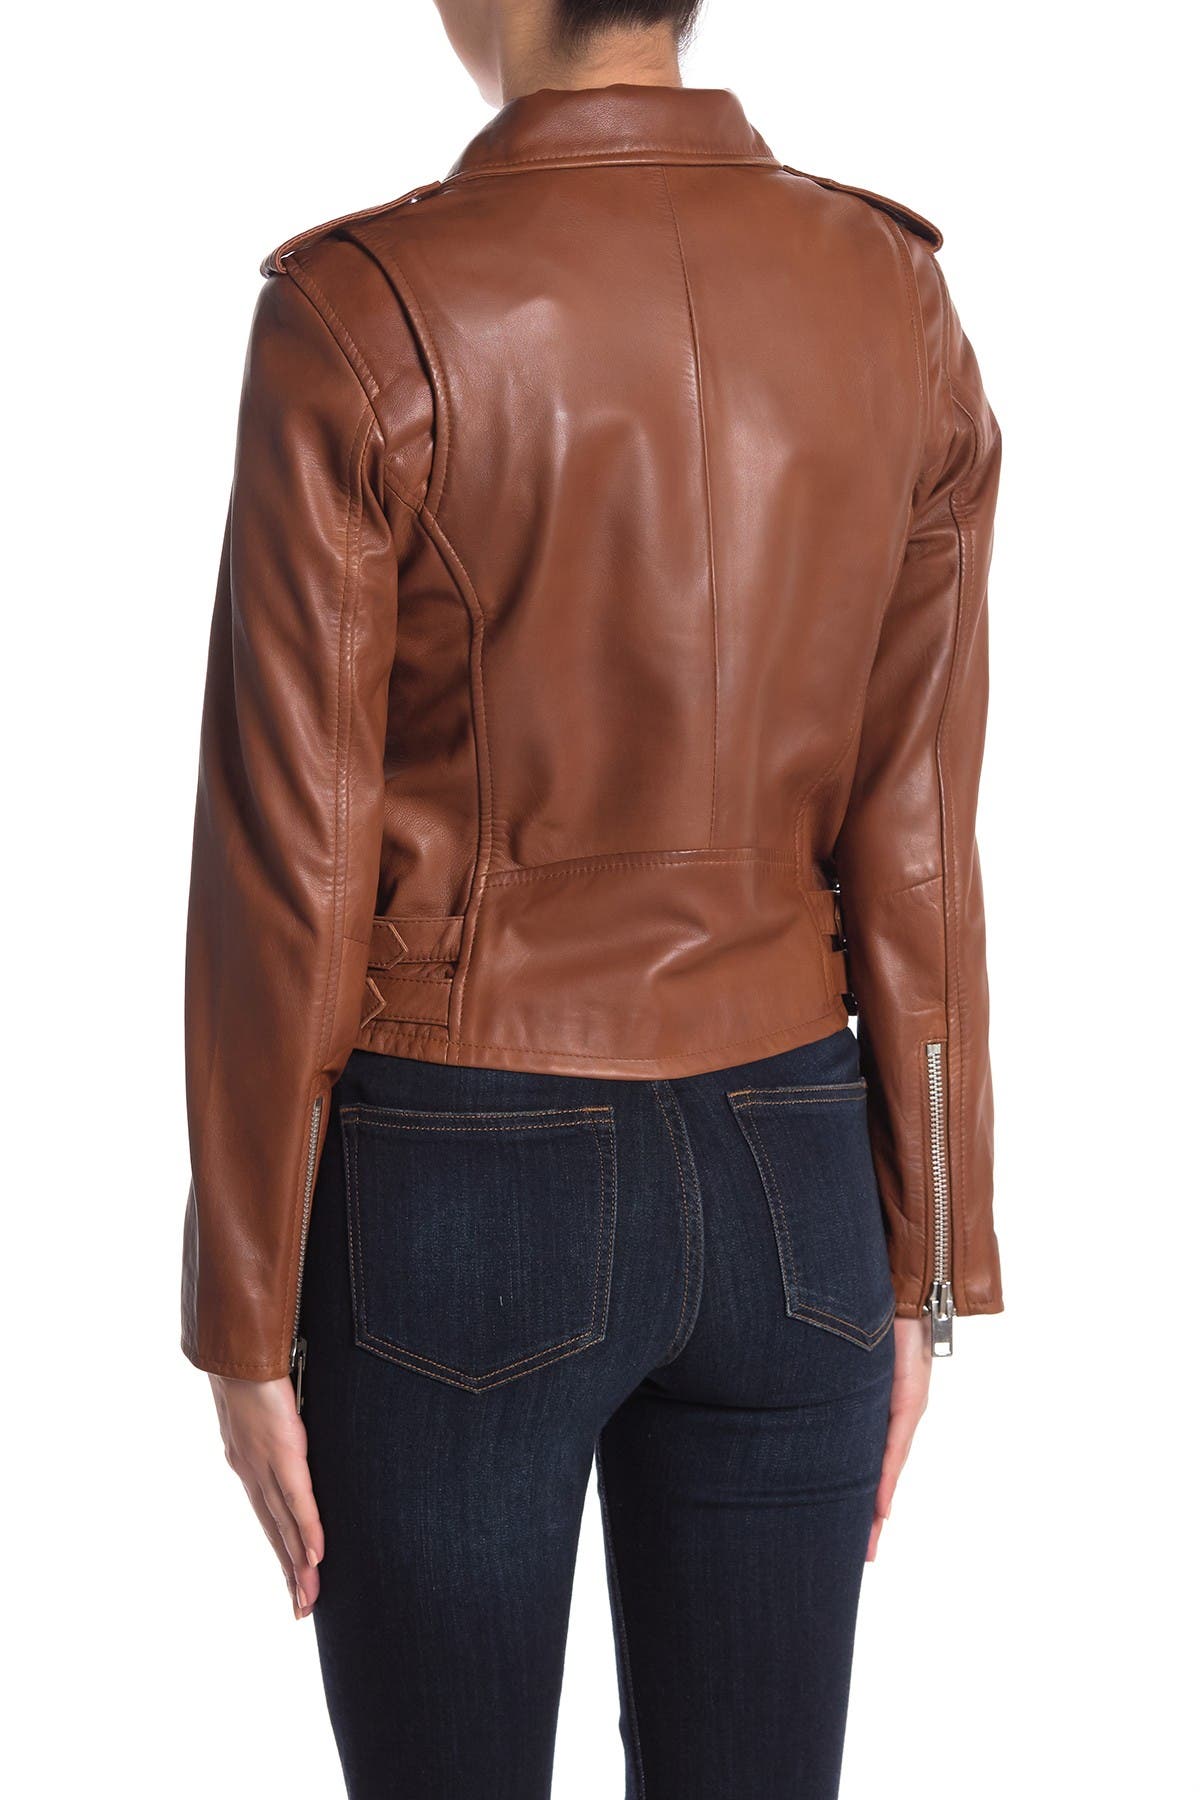 Walter Baker | Liz Leather Crop Moto Jacket | HauteLook